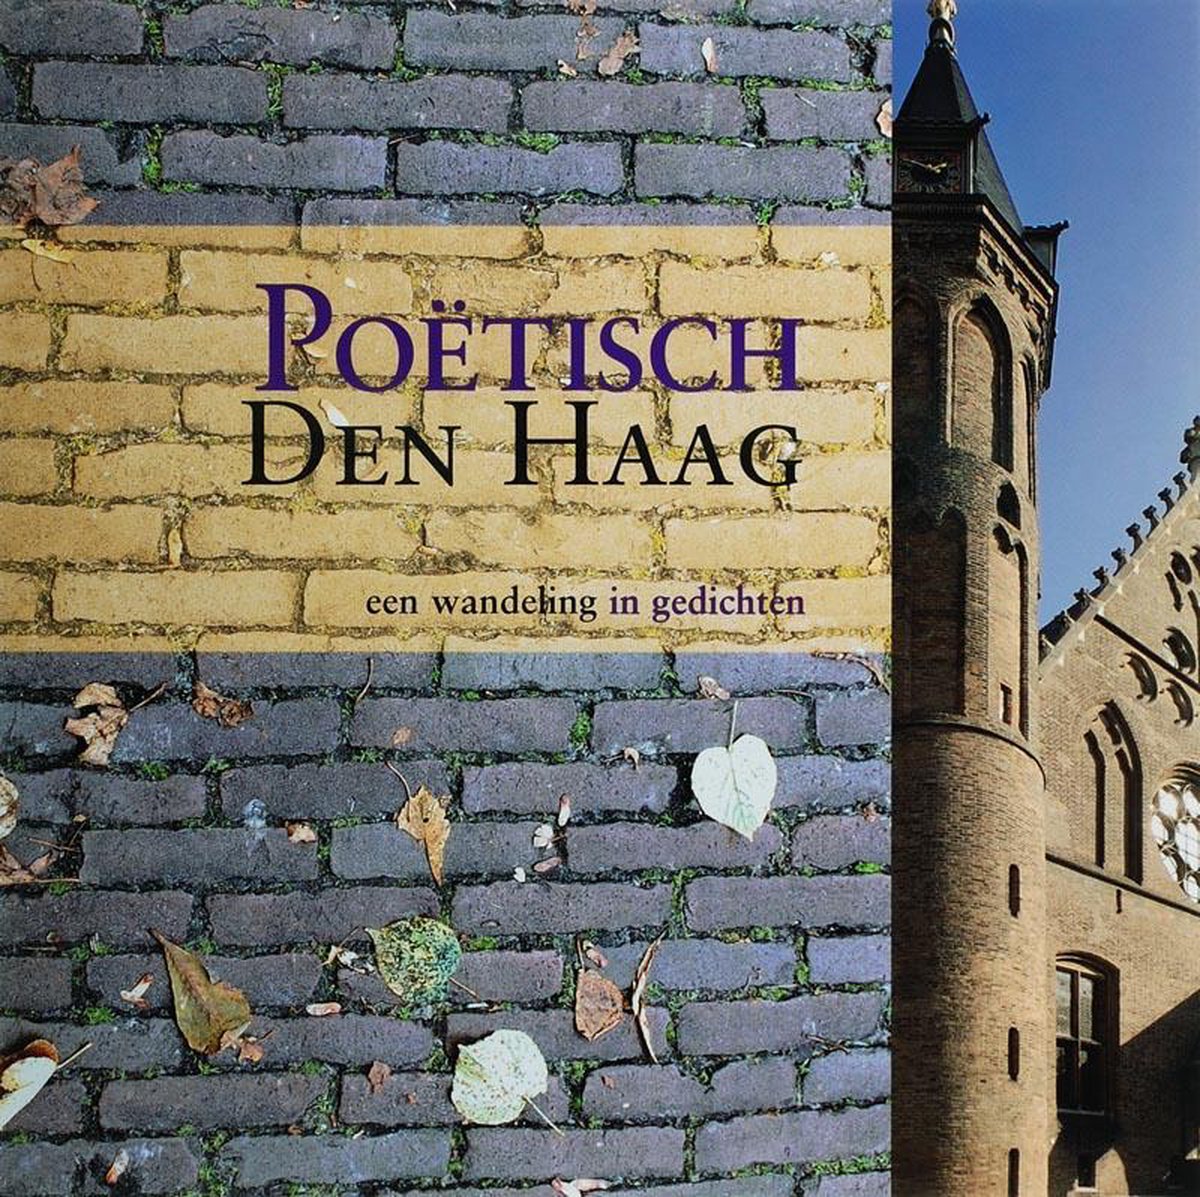 Poetisch Den Haag (Uitgeverij Kleine Uil)